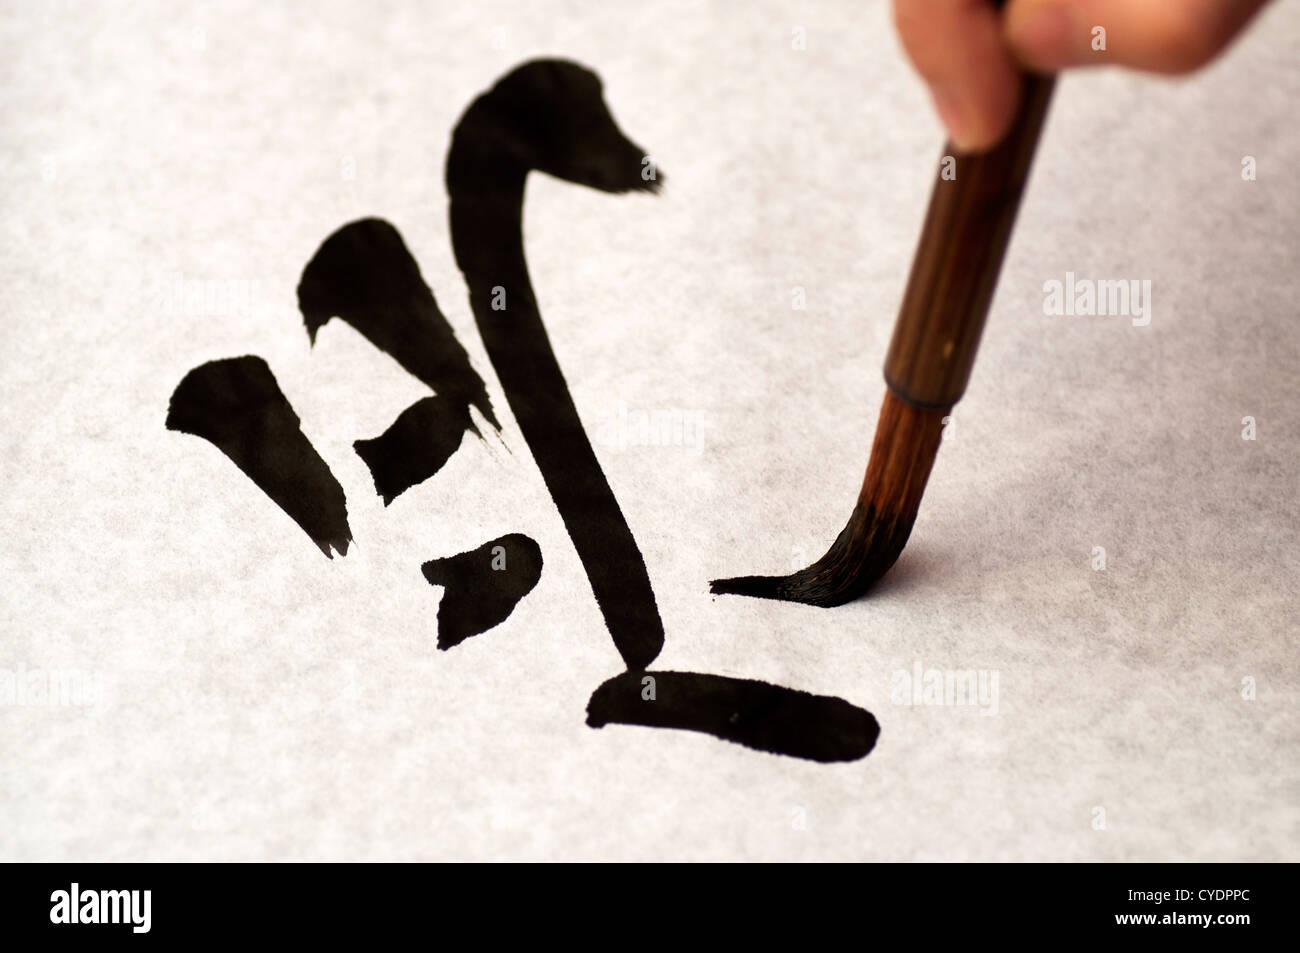 Libre d'une lettre japonaise, étant écrit d'une manière traditionnelle avec de l'encre et pinceau. Banque D'Images